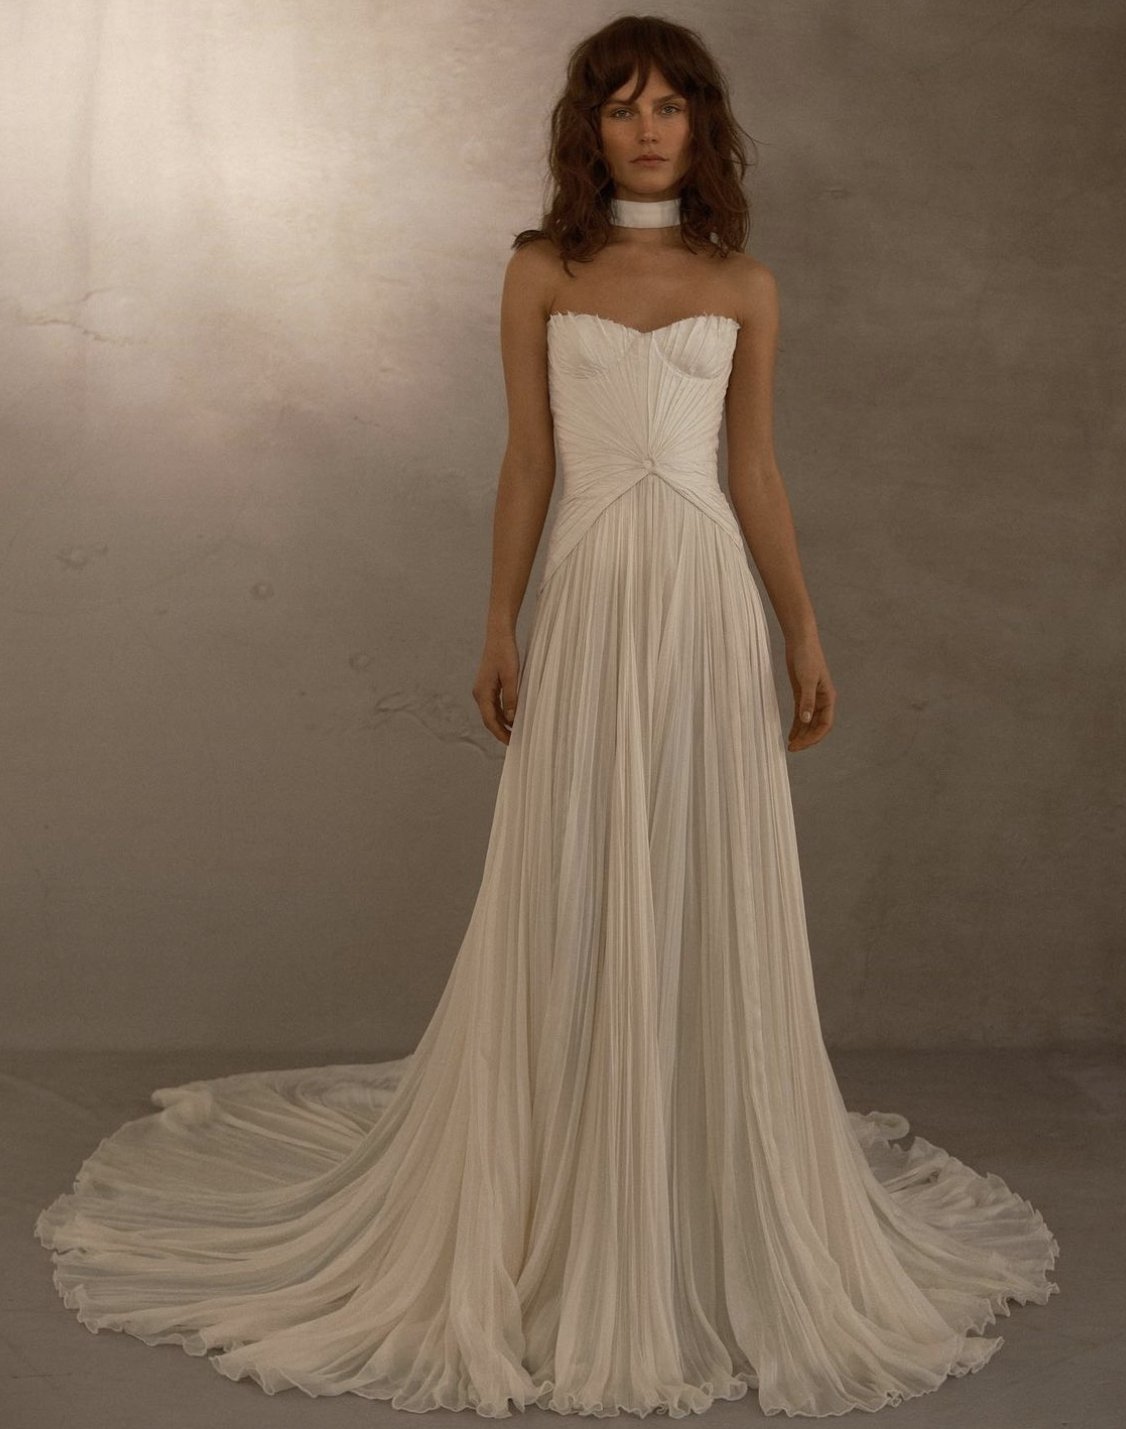 Großzügige A-Linie-Brautkleider Schatz Falten Chiffon Brides Kleid für Frauen Feed Zug Elgenat Bridals Partykleider